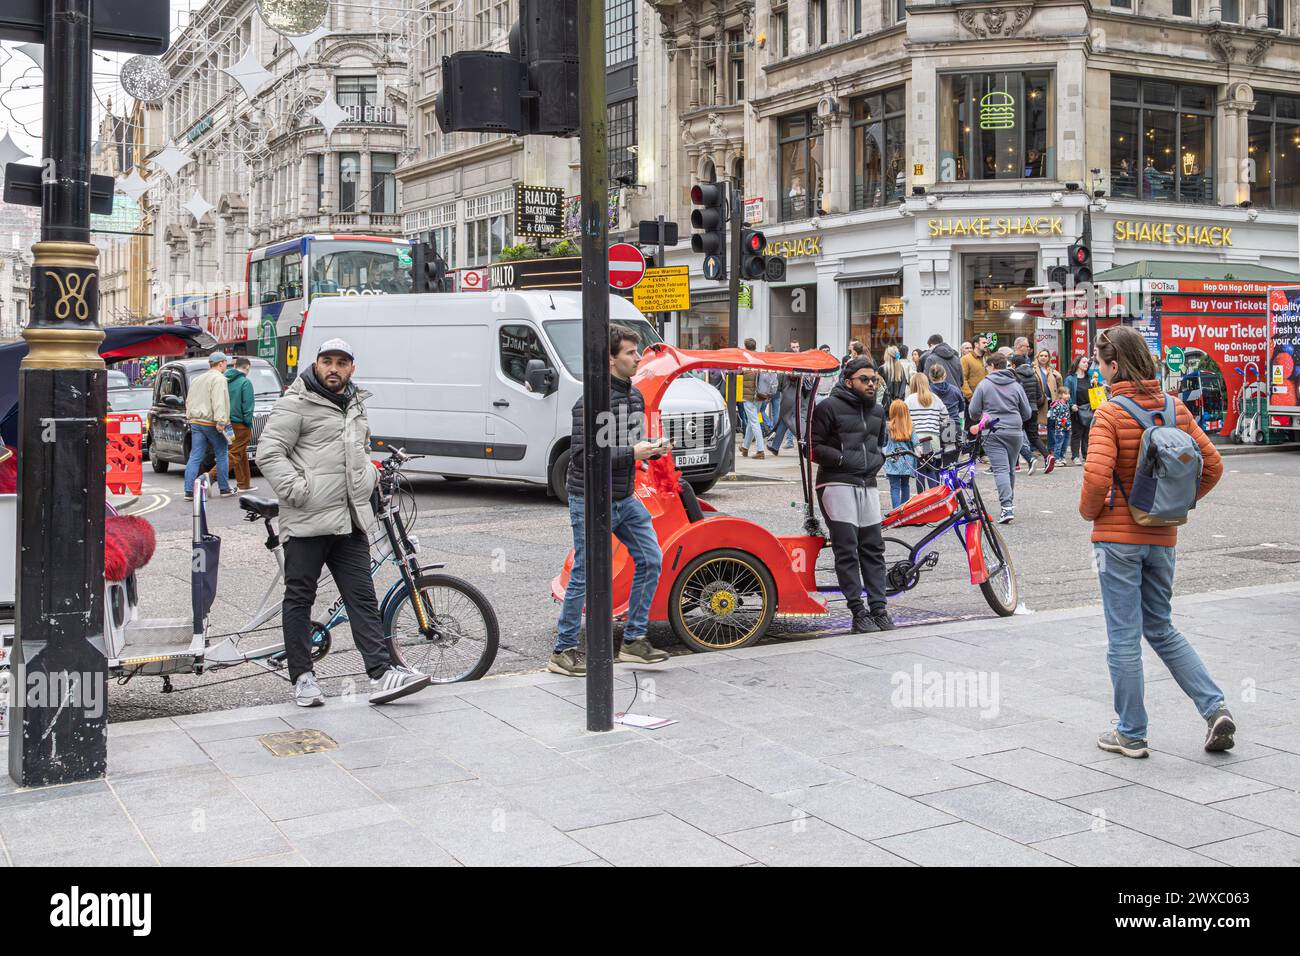 Pédicab ou pousse-pousse se stationne sur les lignes jaunes en attendant son prochain client. Le Pedicabs London Bill réglementera les tarifs et améliorera la sécurité. Banque D'Images